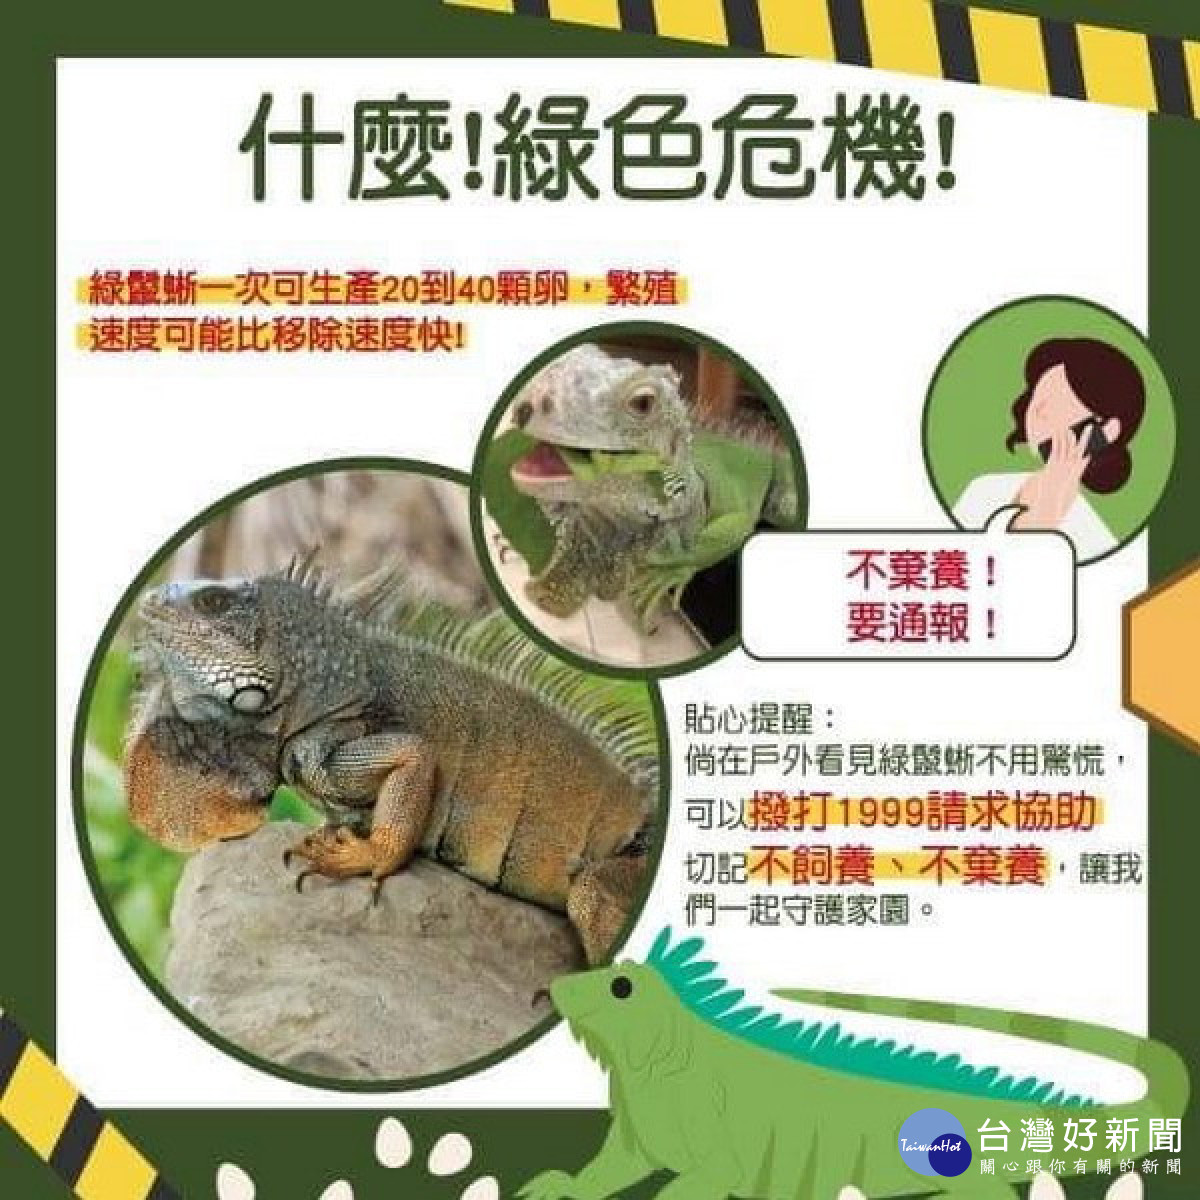 綠鬣蜥入侵衛武營公園　高市府籲民眾若發現應通報1999處理